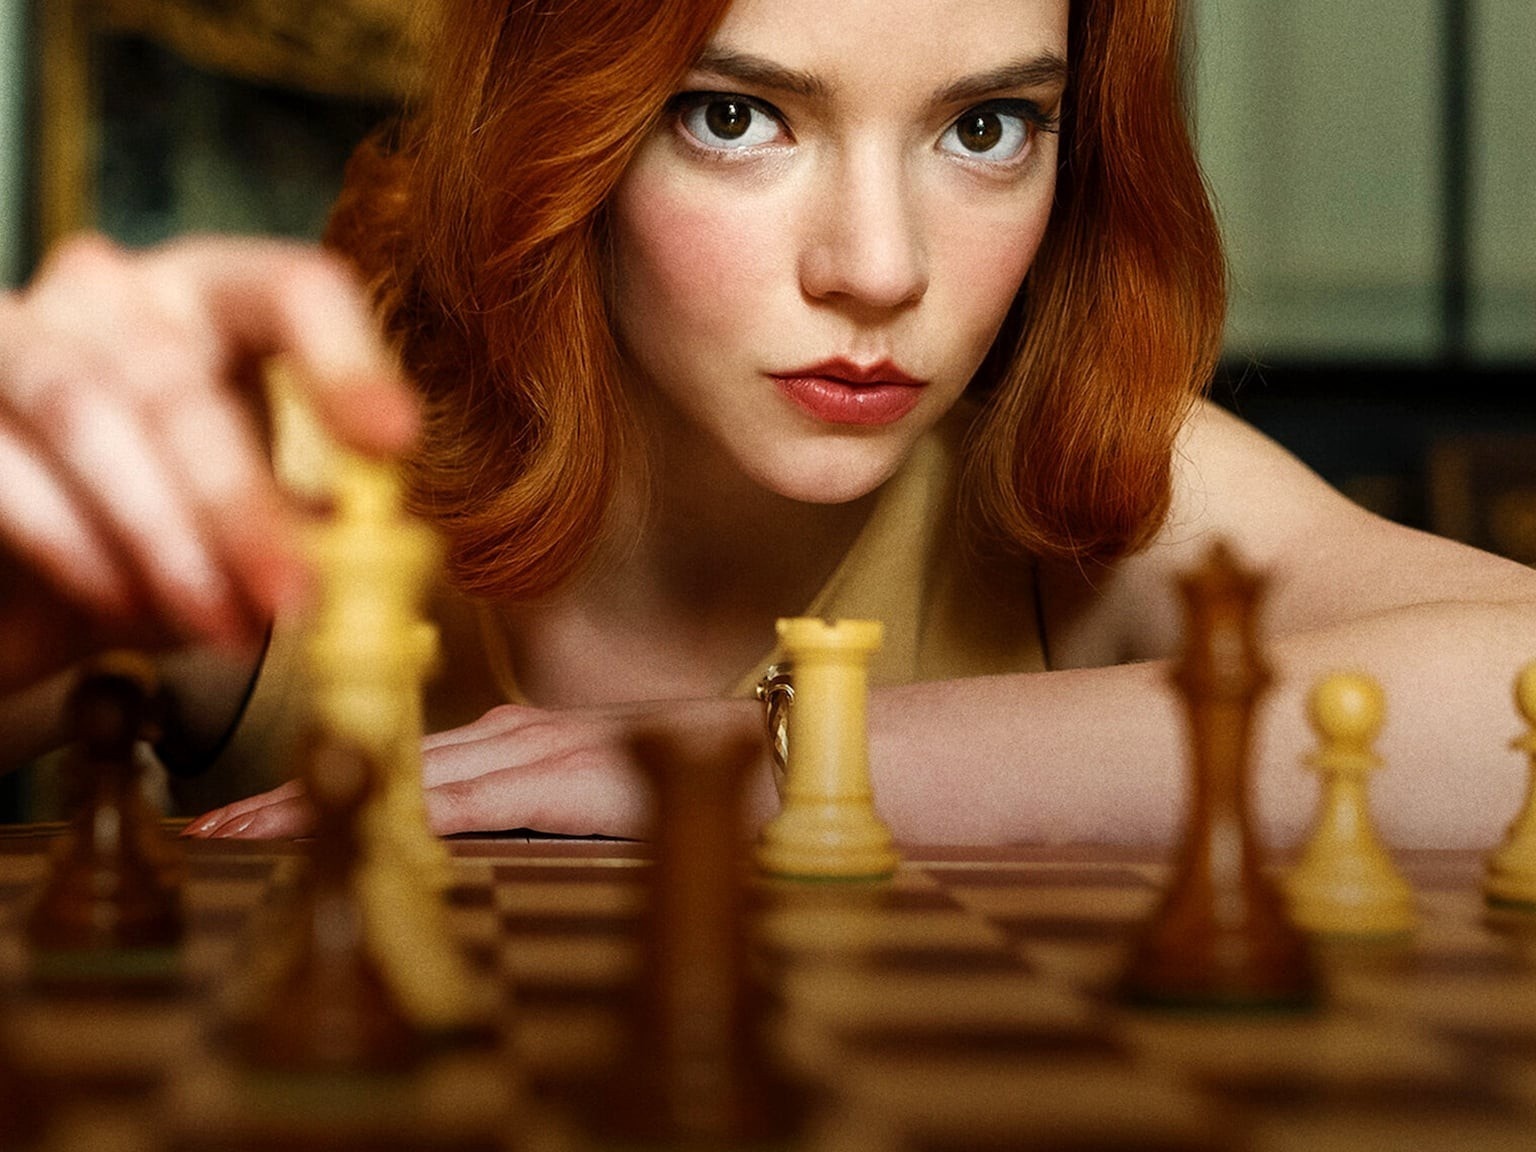 Como 'O Gambito da Rainha' vem inspirando as mulheres a jogar